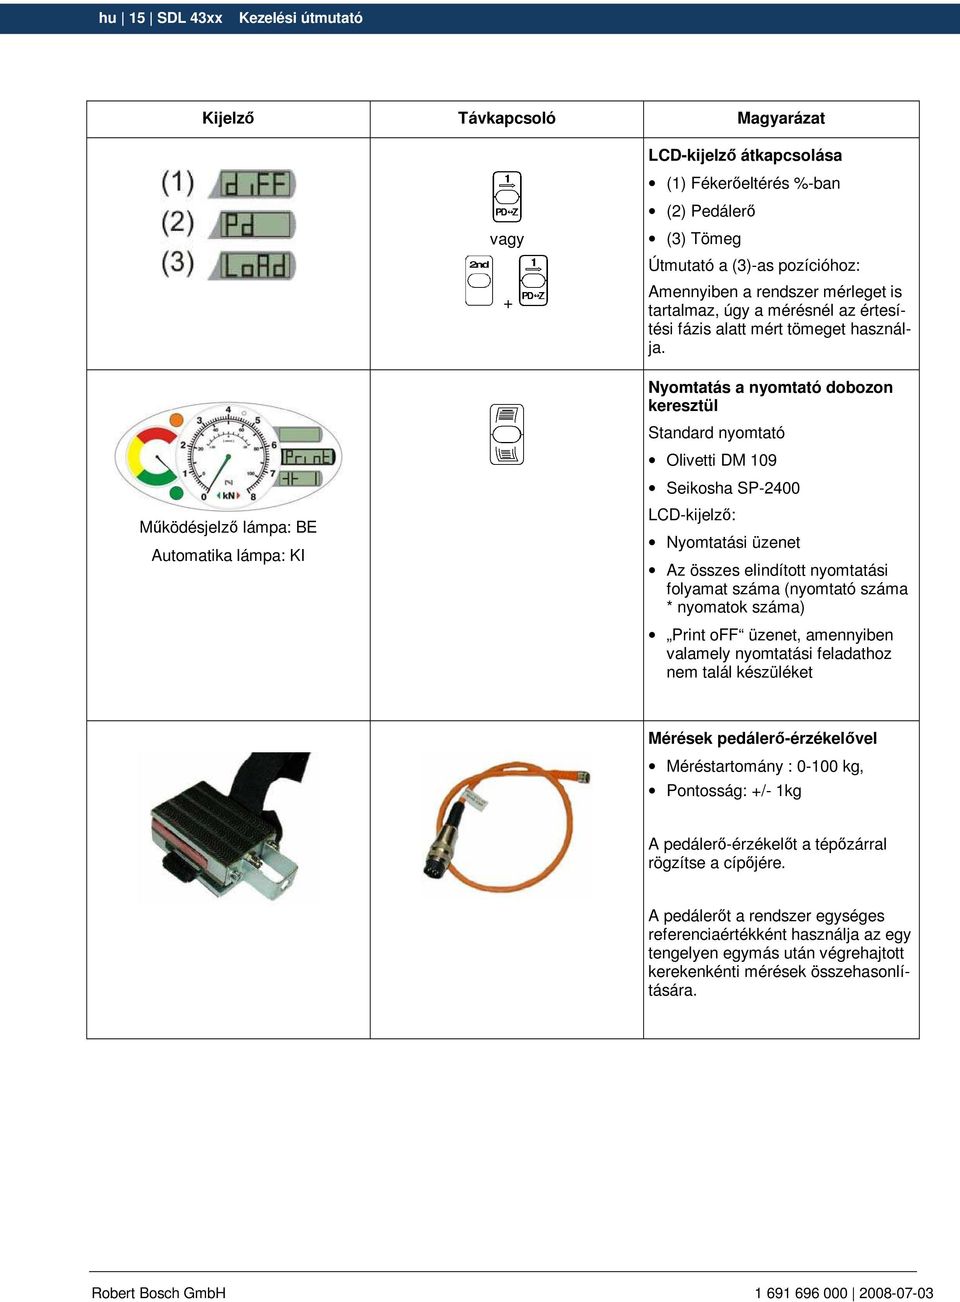 Nyomtatás a nyomtató dobozon keresztül Standard nyomtató Olivetti DM 109 Seikosha SP-2400 LCD-kijelzı: Nyomtatási üzenet Az összes elindított nyomtatási folyamat száma (nyomtató száma * nyomatok